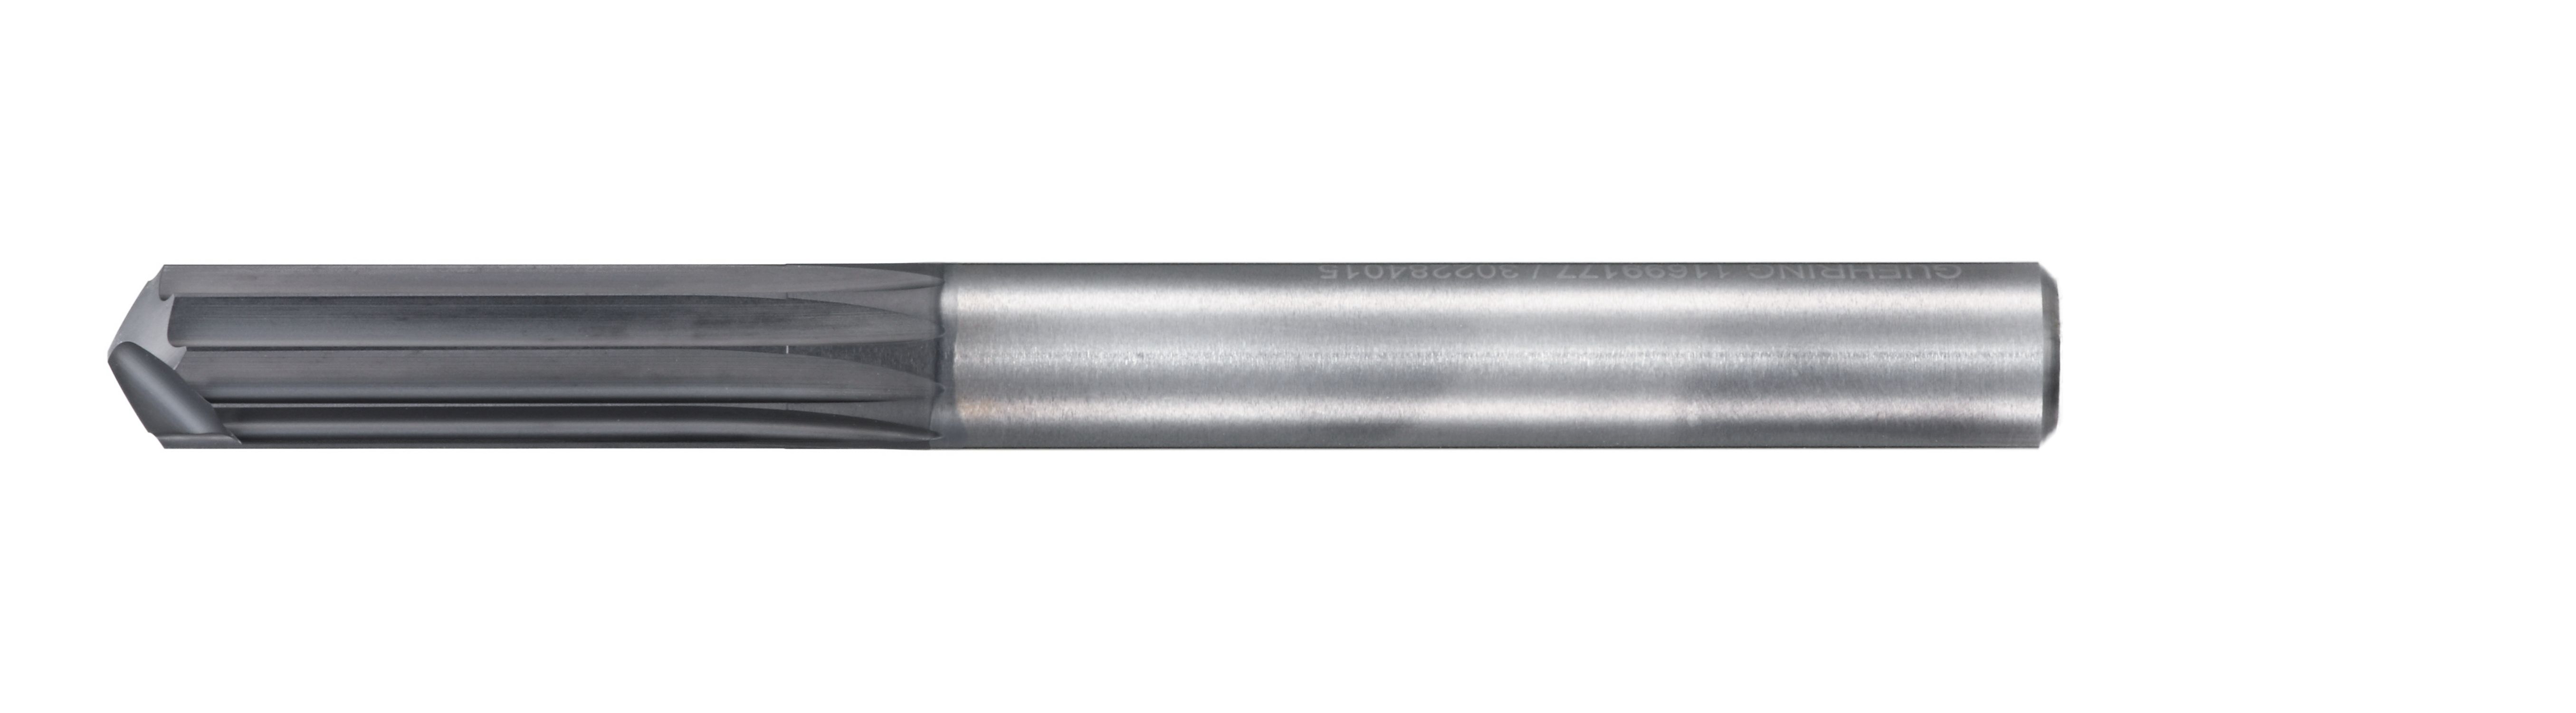 開槽/承擔Multi-Flute端銑刀的碳纖維增強塑料鑽尖CR100 6720